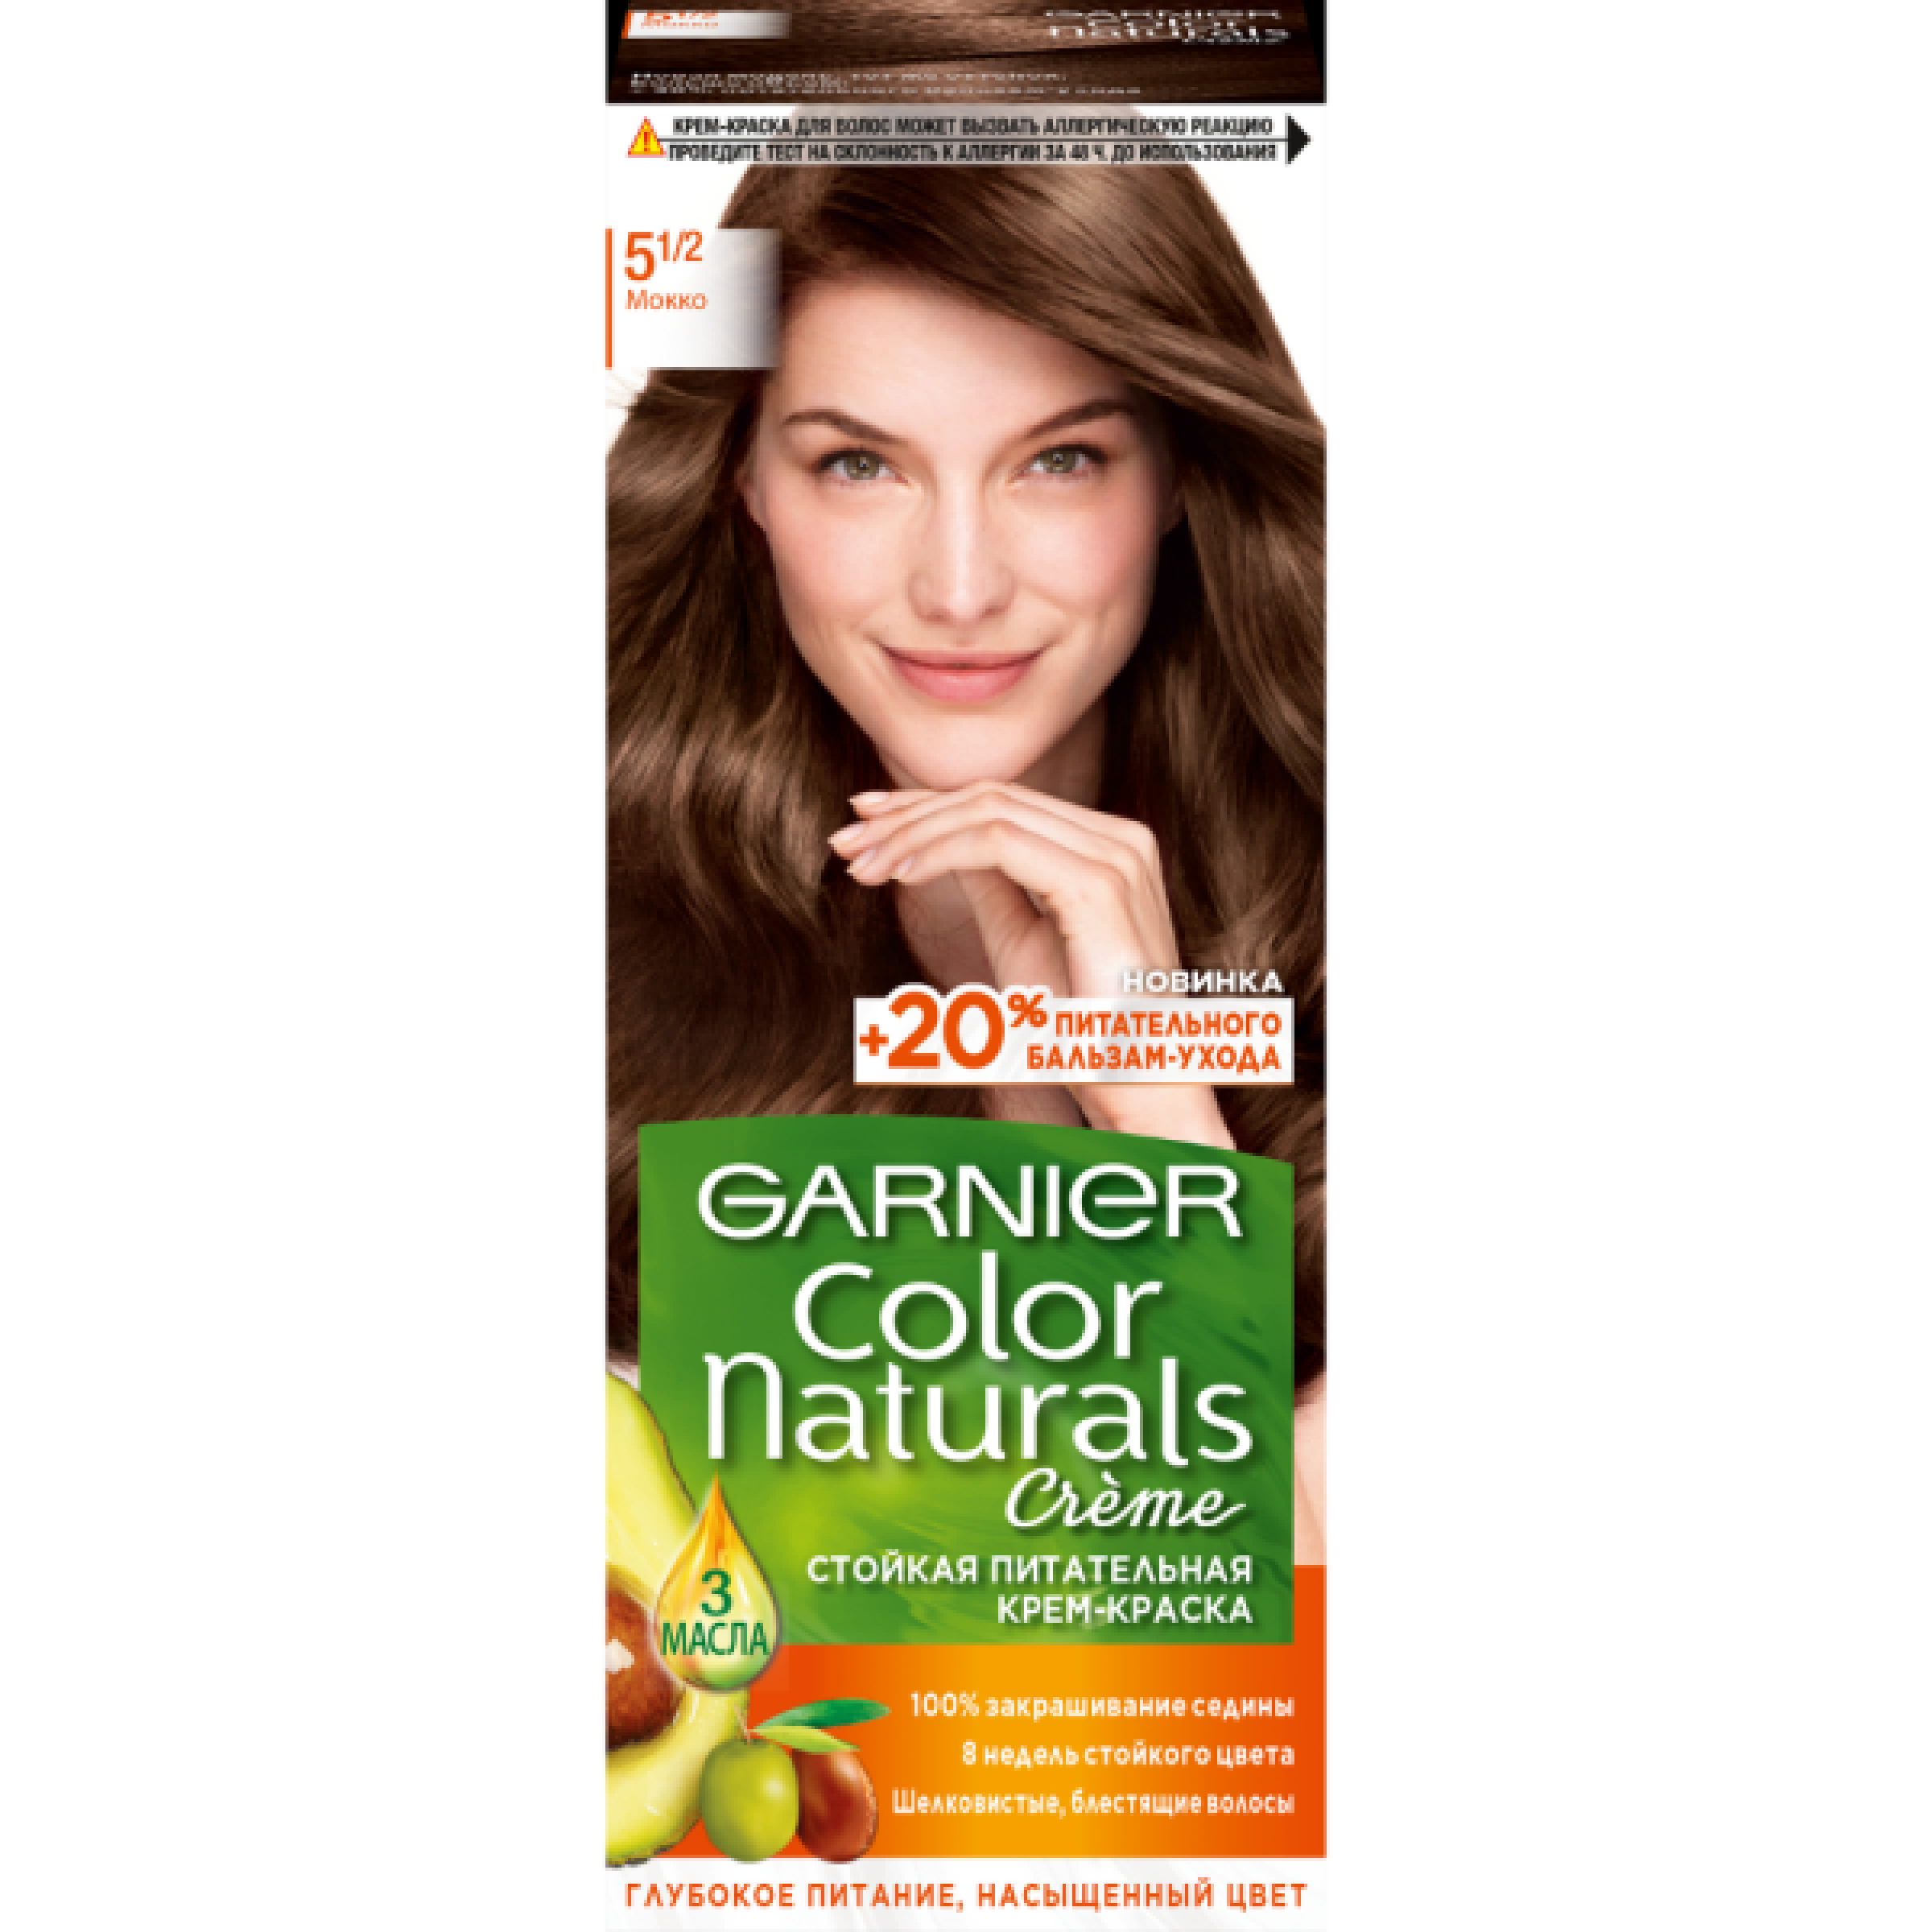 Стойкая крем-краска для волос Garnier Color Naturals тон 5.1/2 Мокко, 110 мл